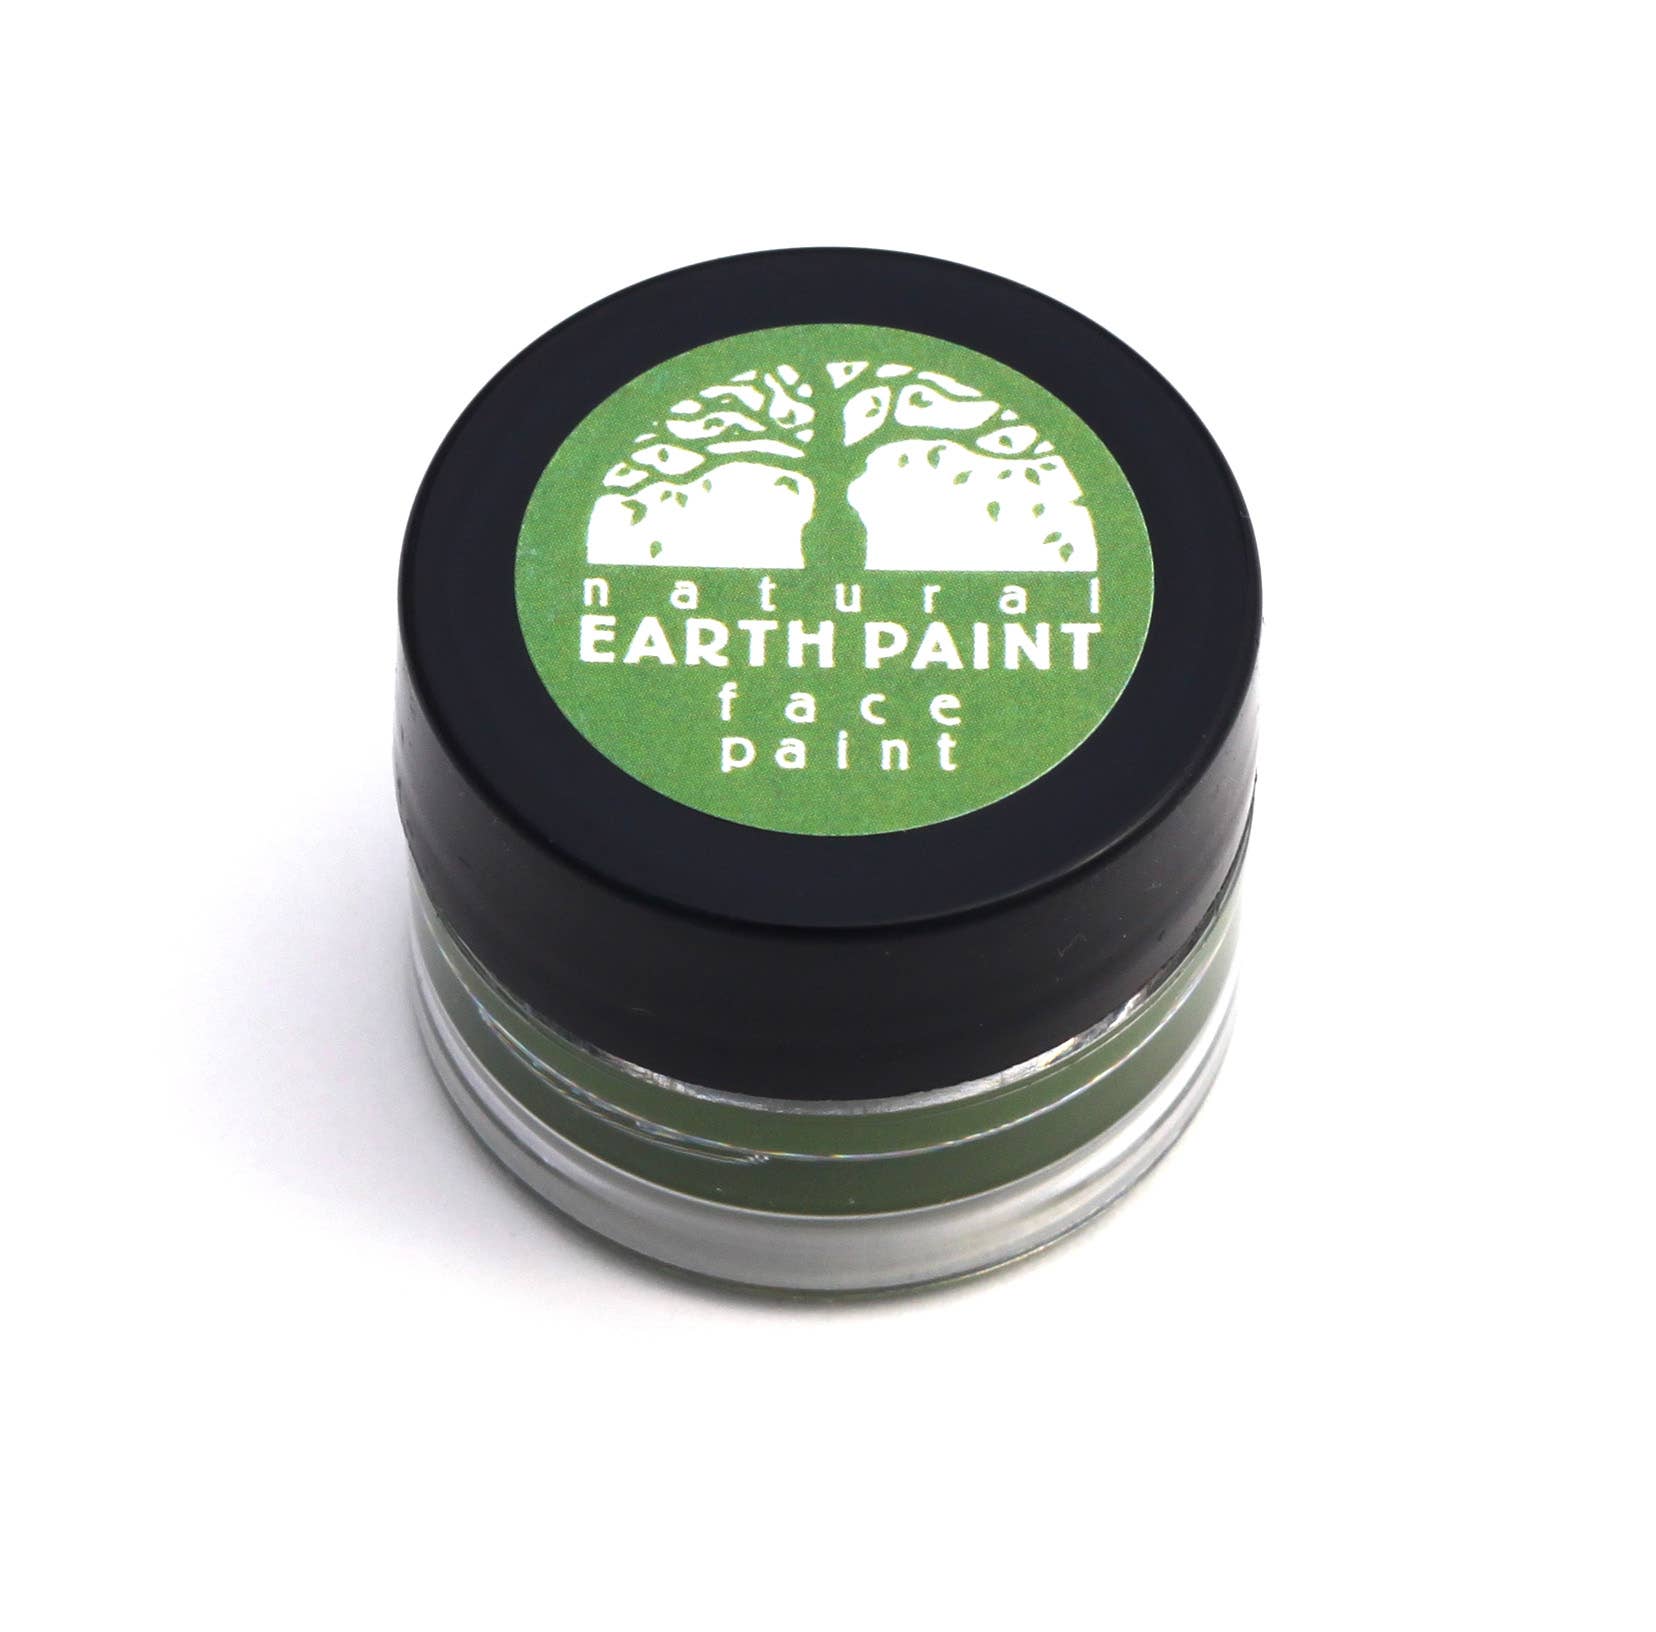 Natural Earth Paint - Natural Face Paint - Individual Jars Green